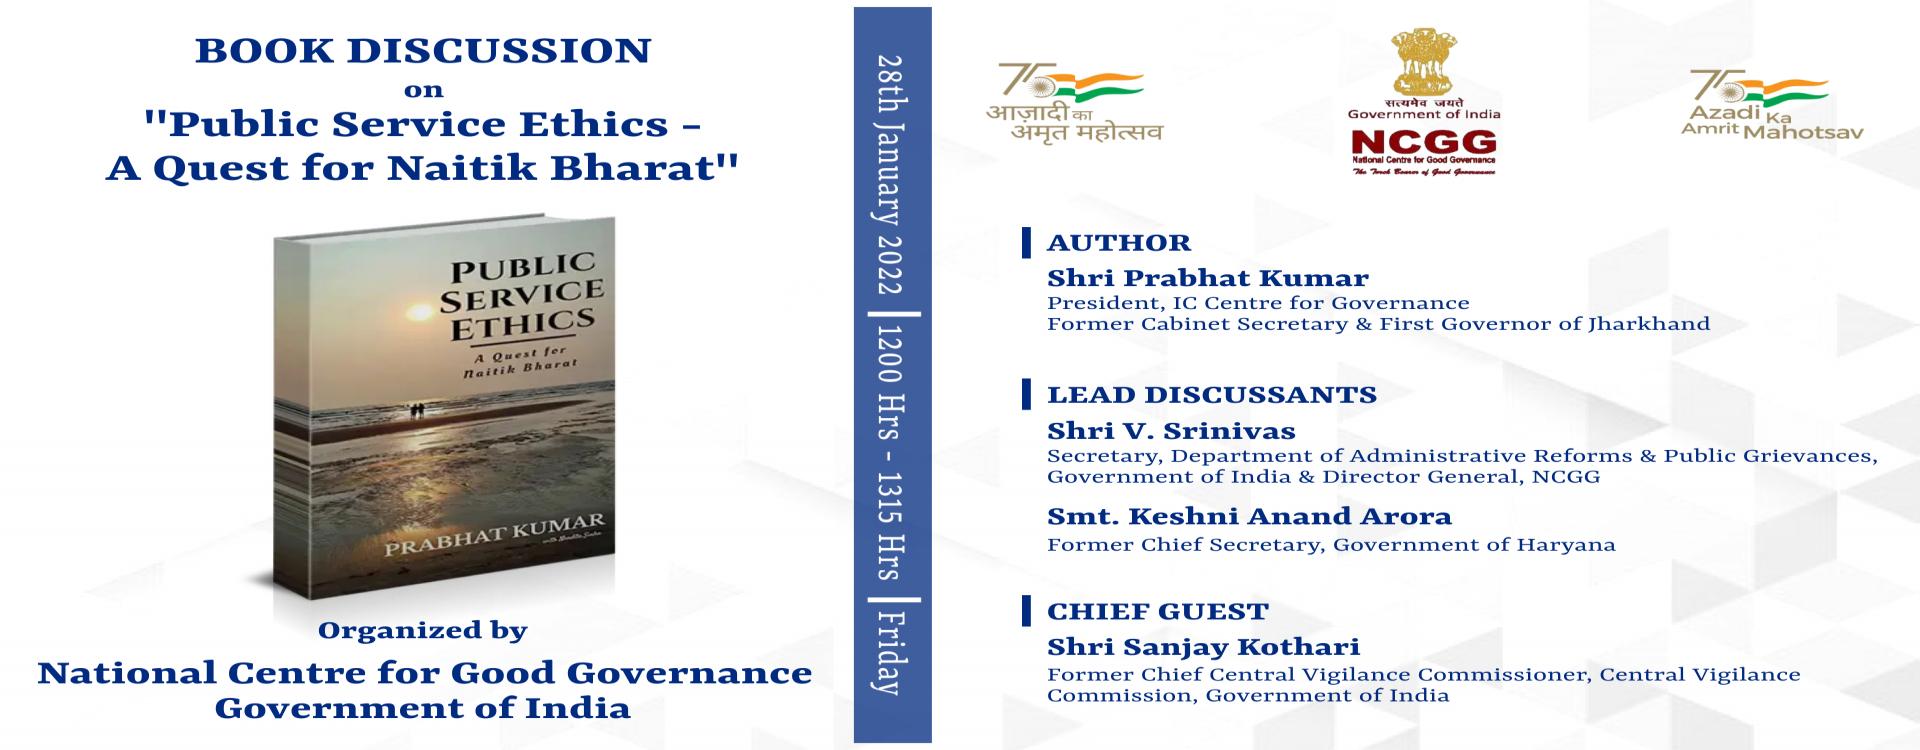 Virtual Book Discussion on &quot;Public Service Ethics - A Quest for Naitik Bharat&quot;